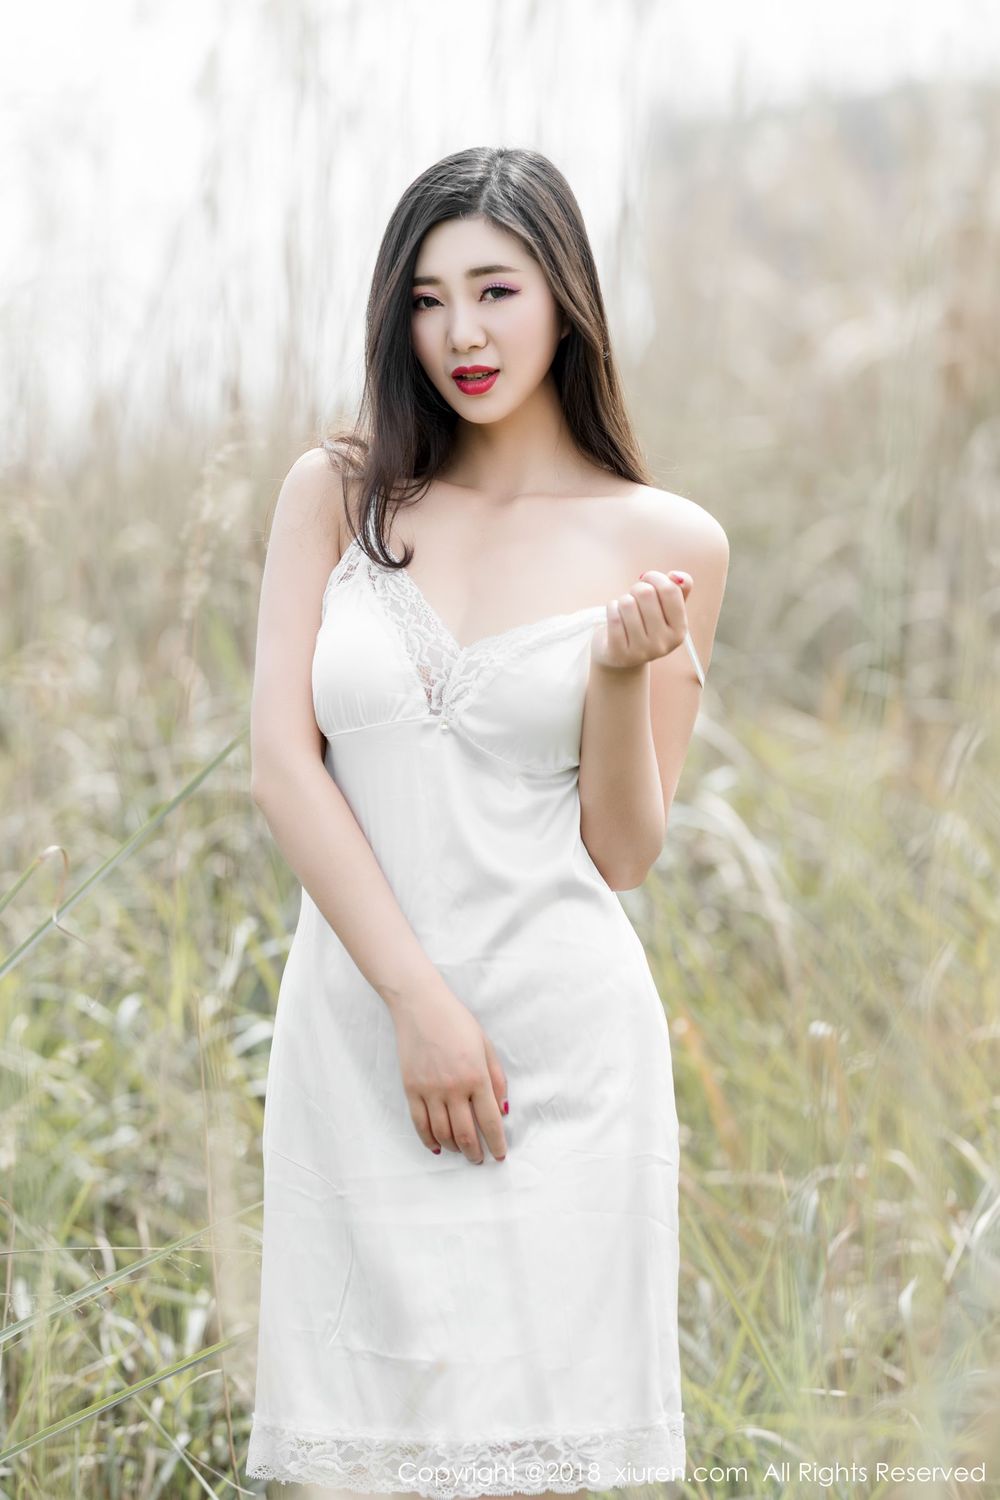 美女模特宋KiKi - 白色长裙+情趣服饰野外性感写真